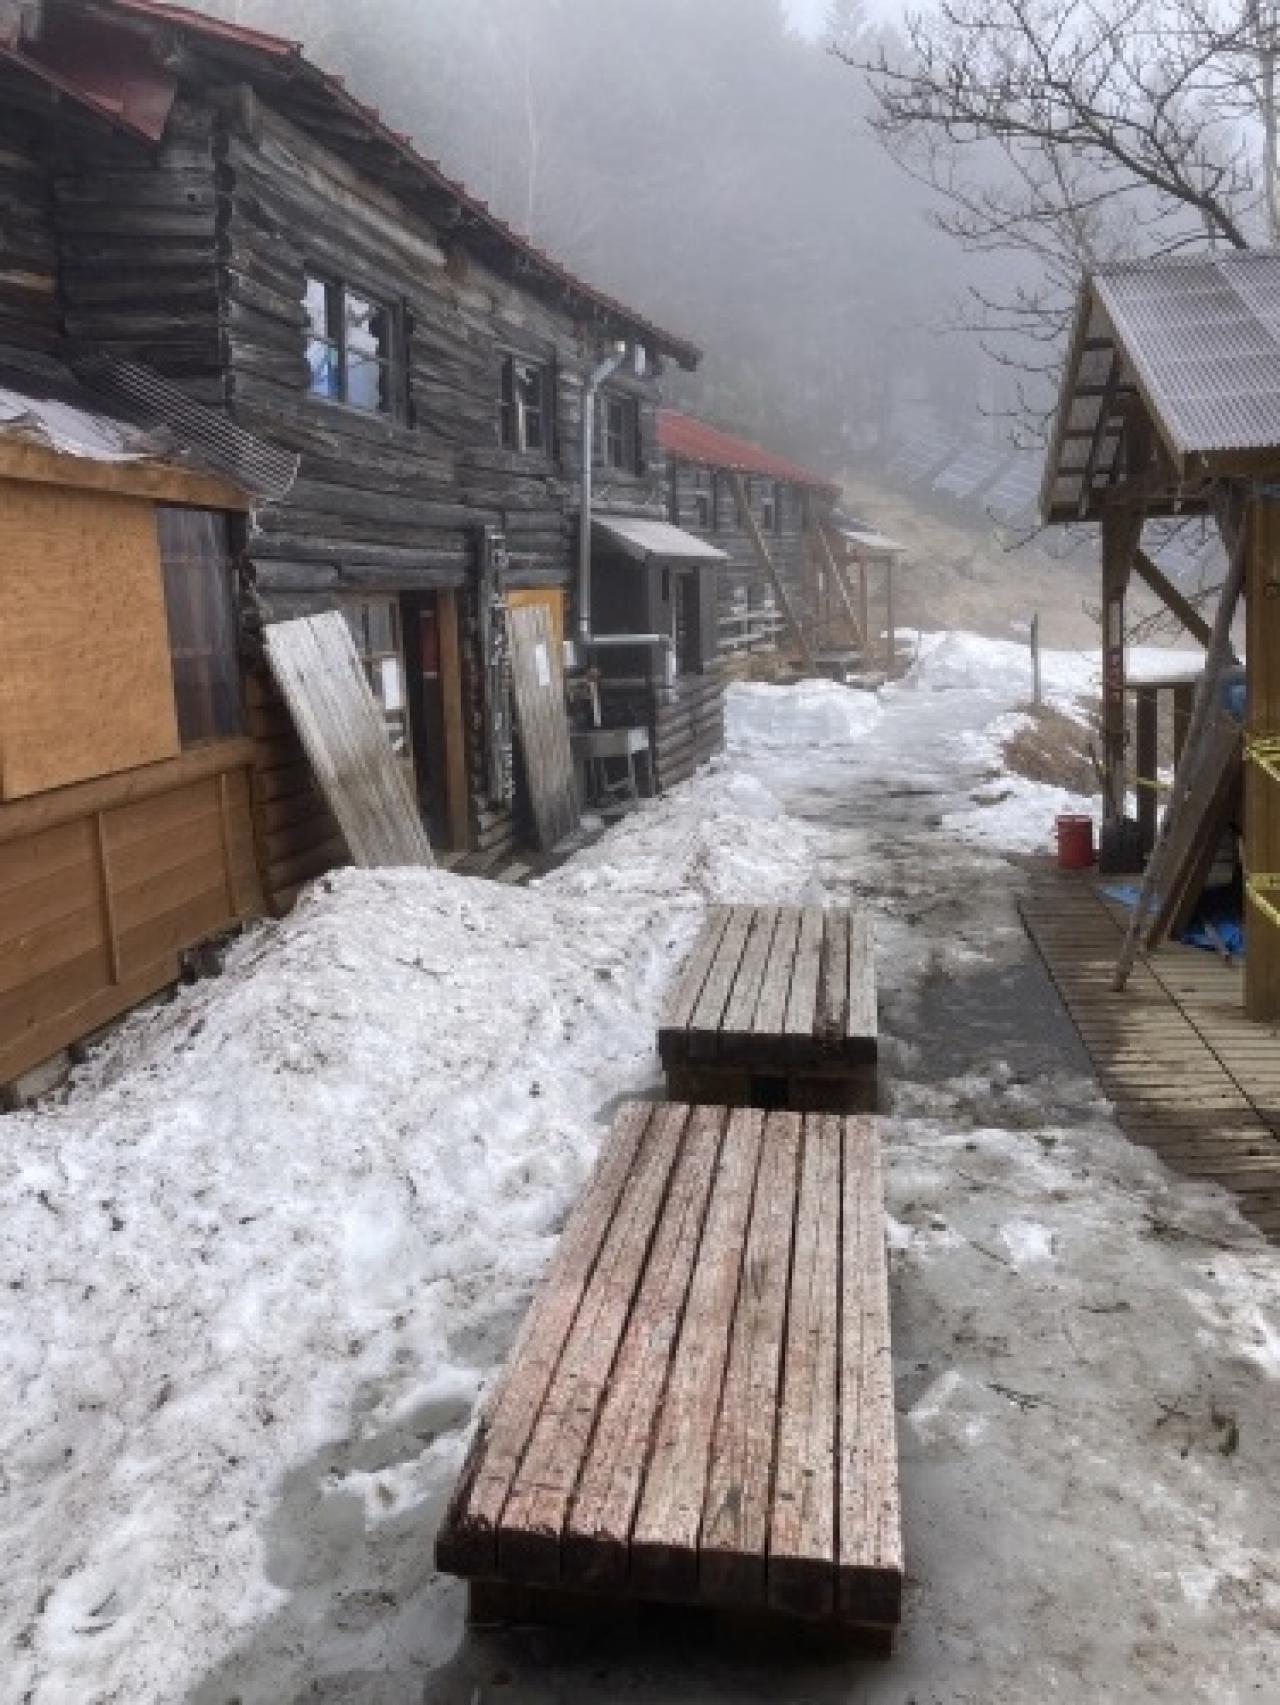 甲武信小屋　入山準備ため小屋入りしました。まだまだ残雪がたっぷりあり軽アイゼンなど必要です